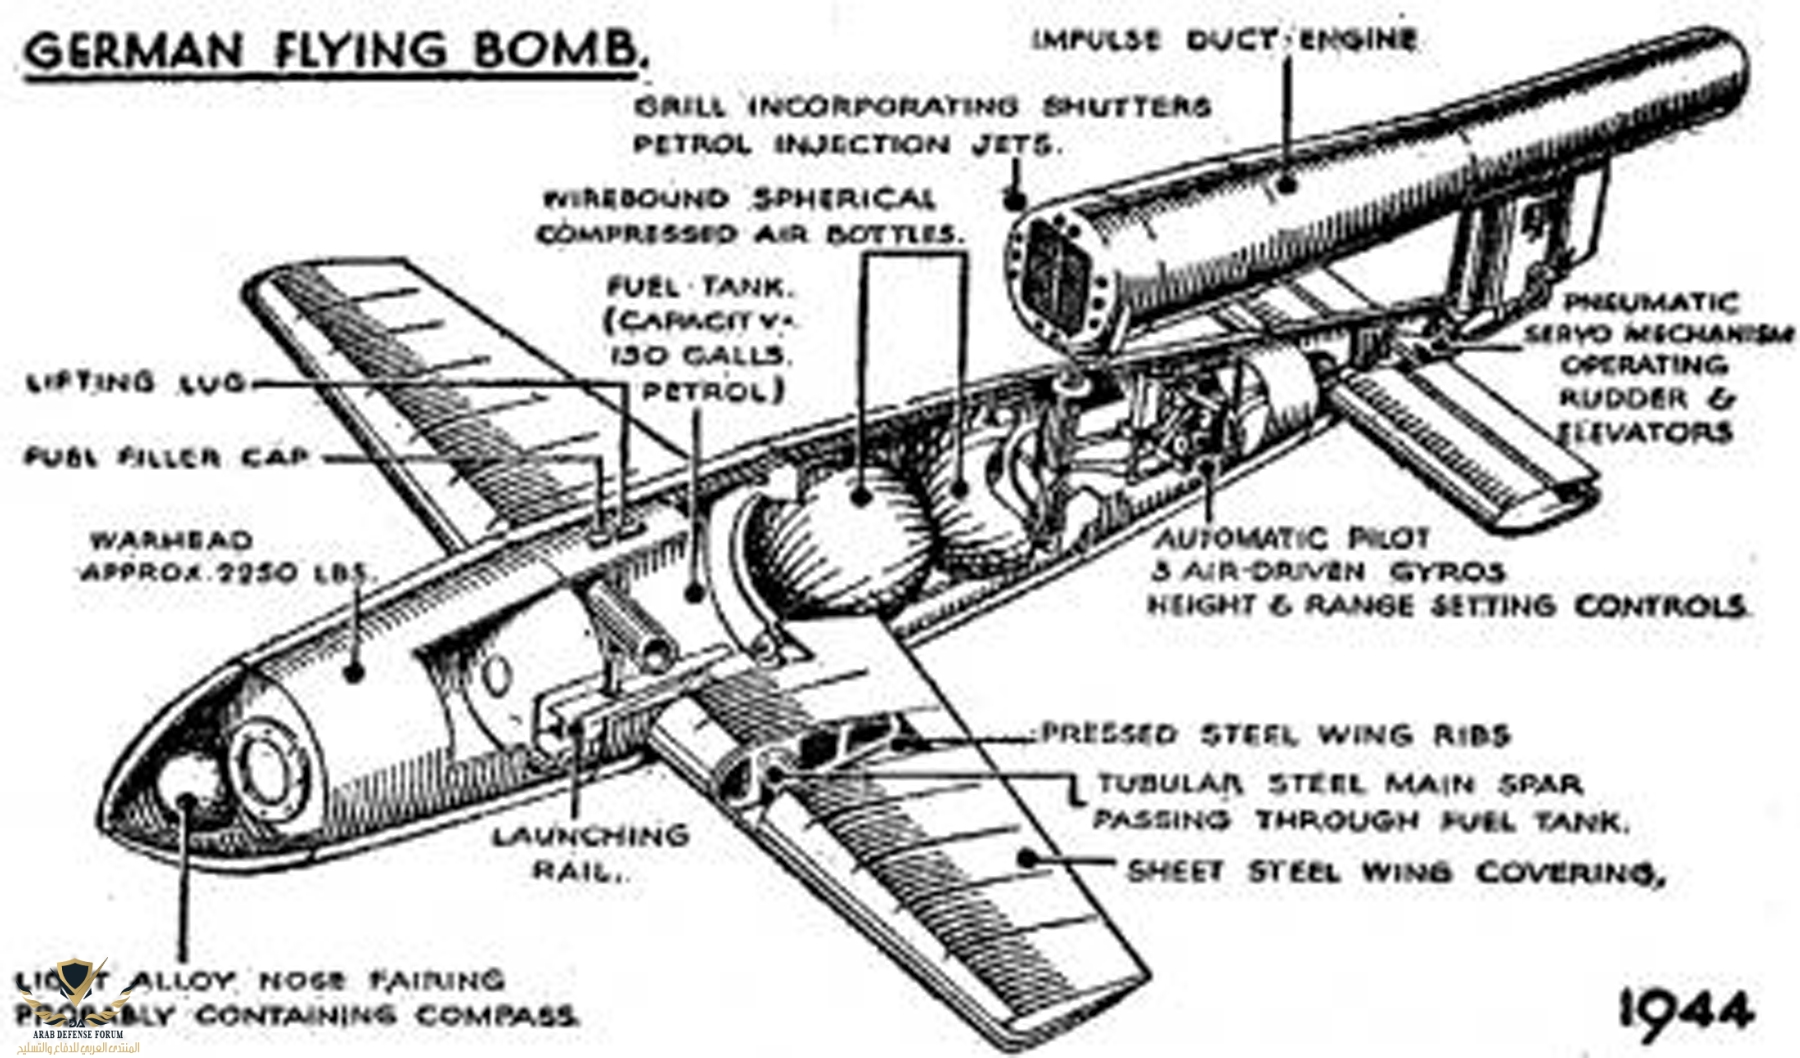 inside-the-v1-flying-bomb.jpg